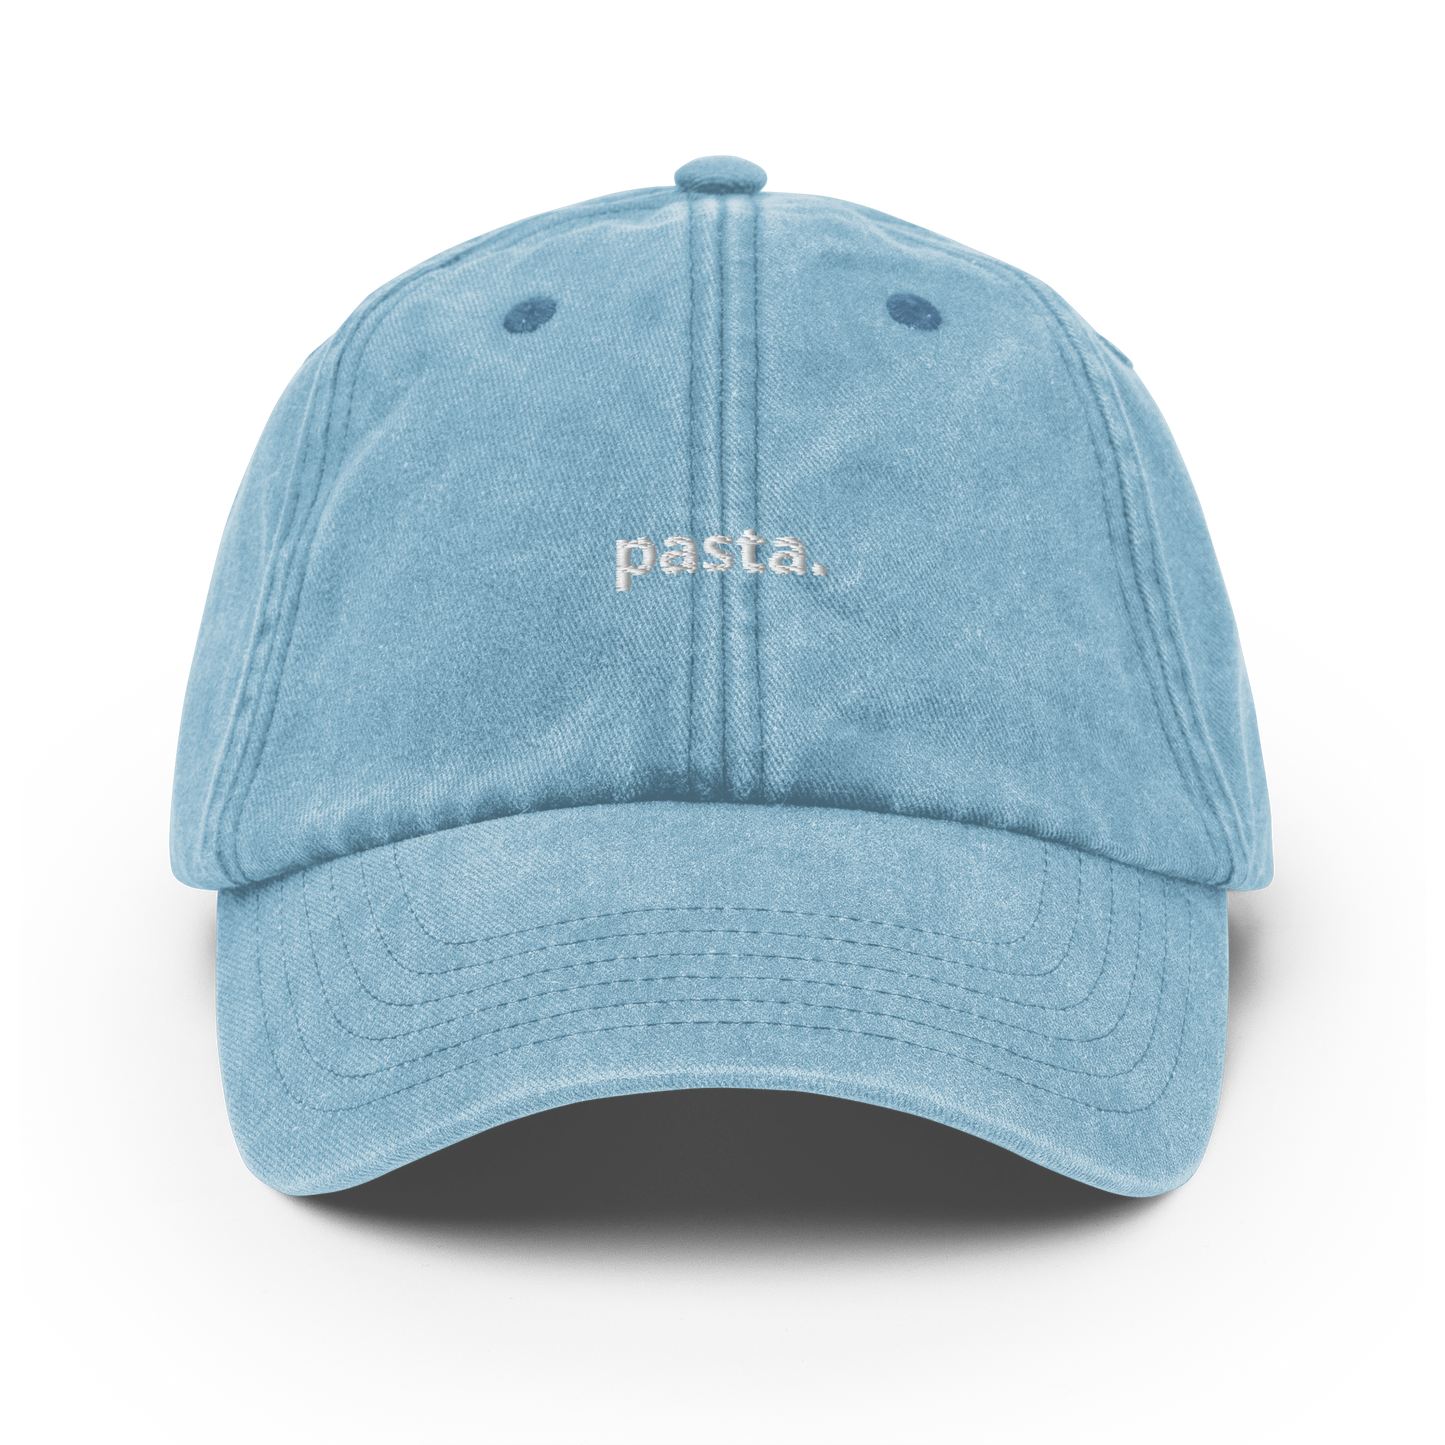 Pasta - Vintage Hat